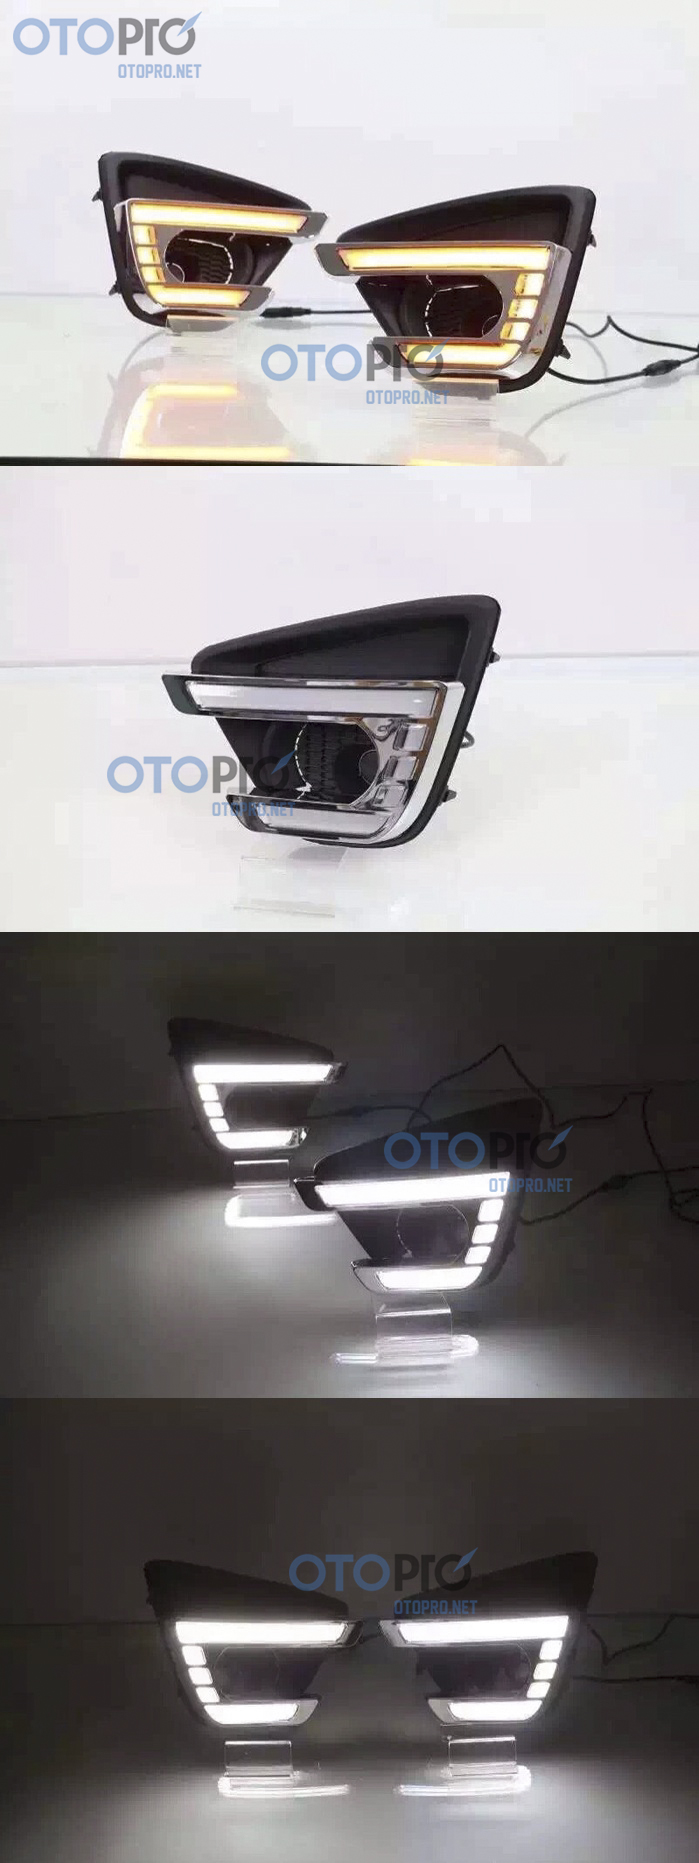 Đèn gầm daylight cho xe Mazda CX5 đời 2016 mẫu LED khối